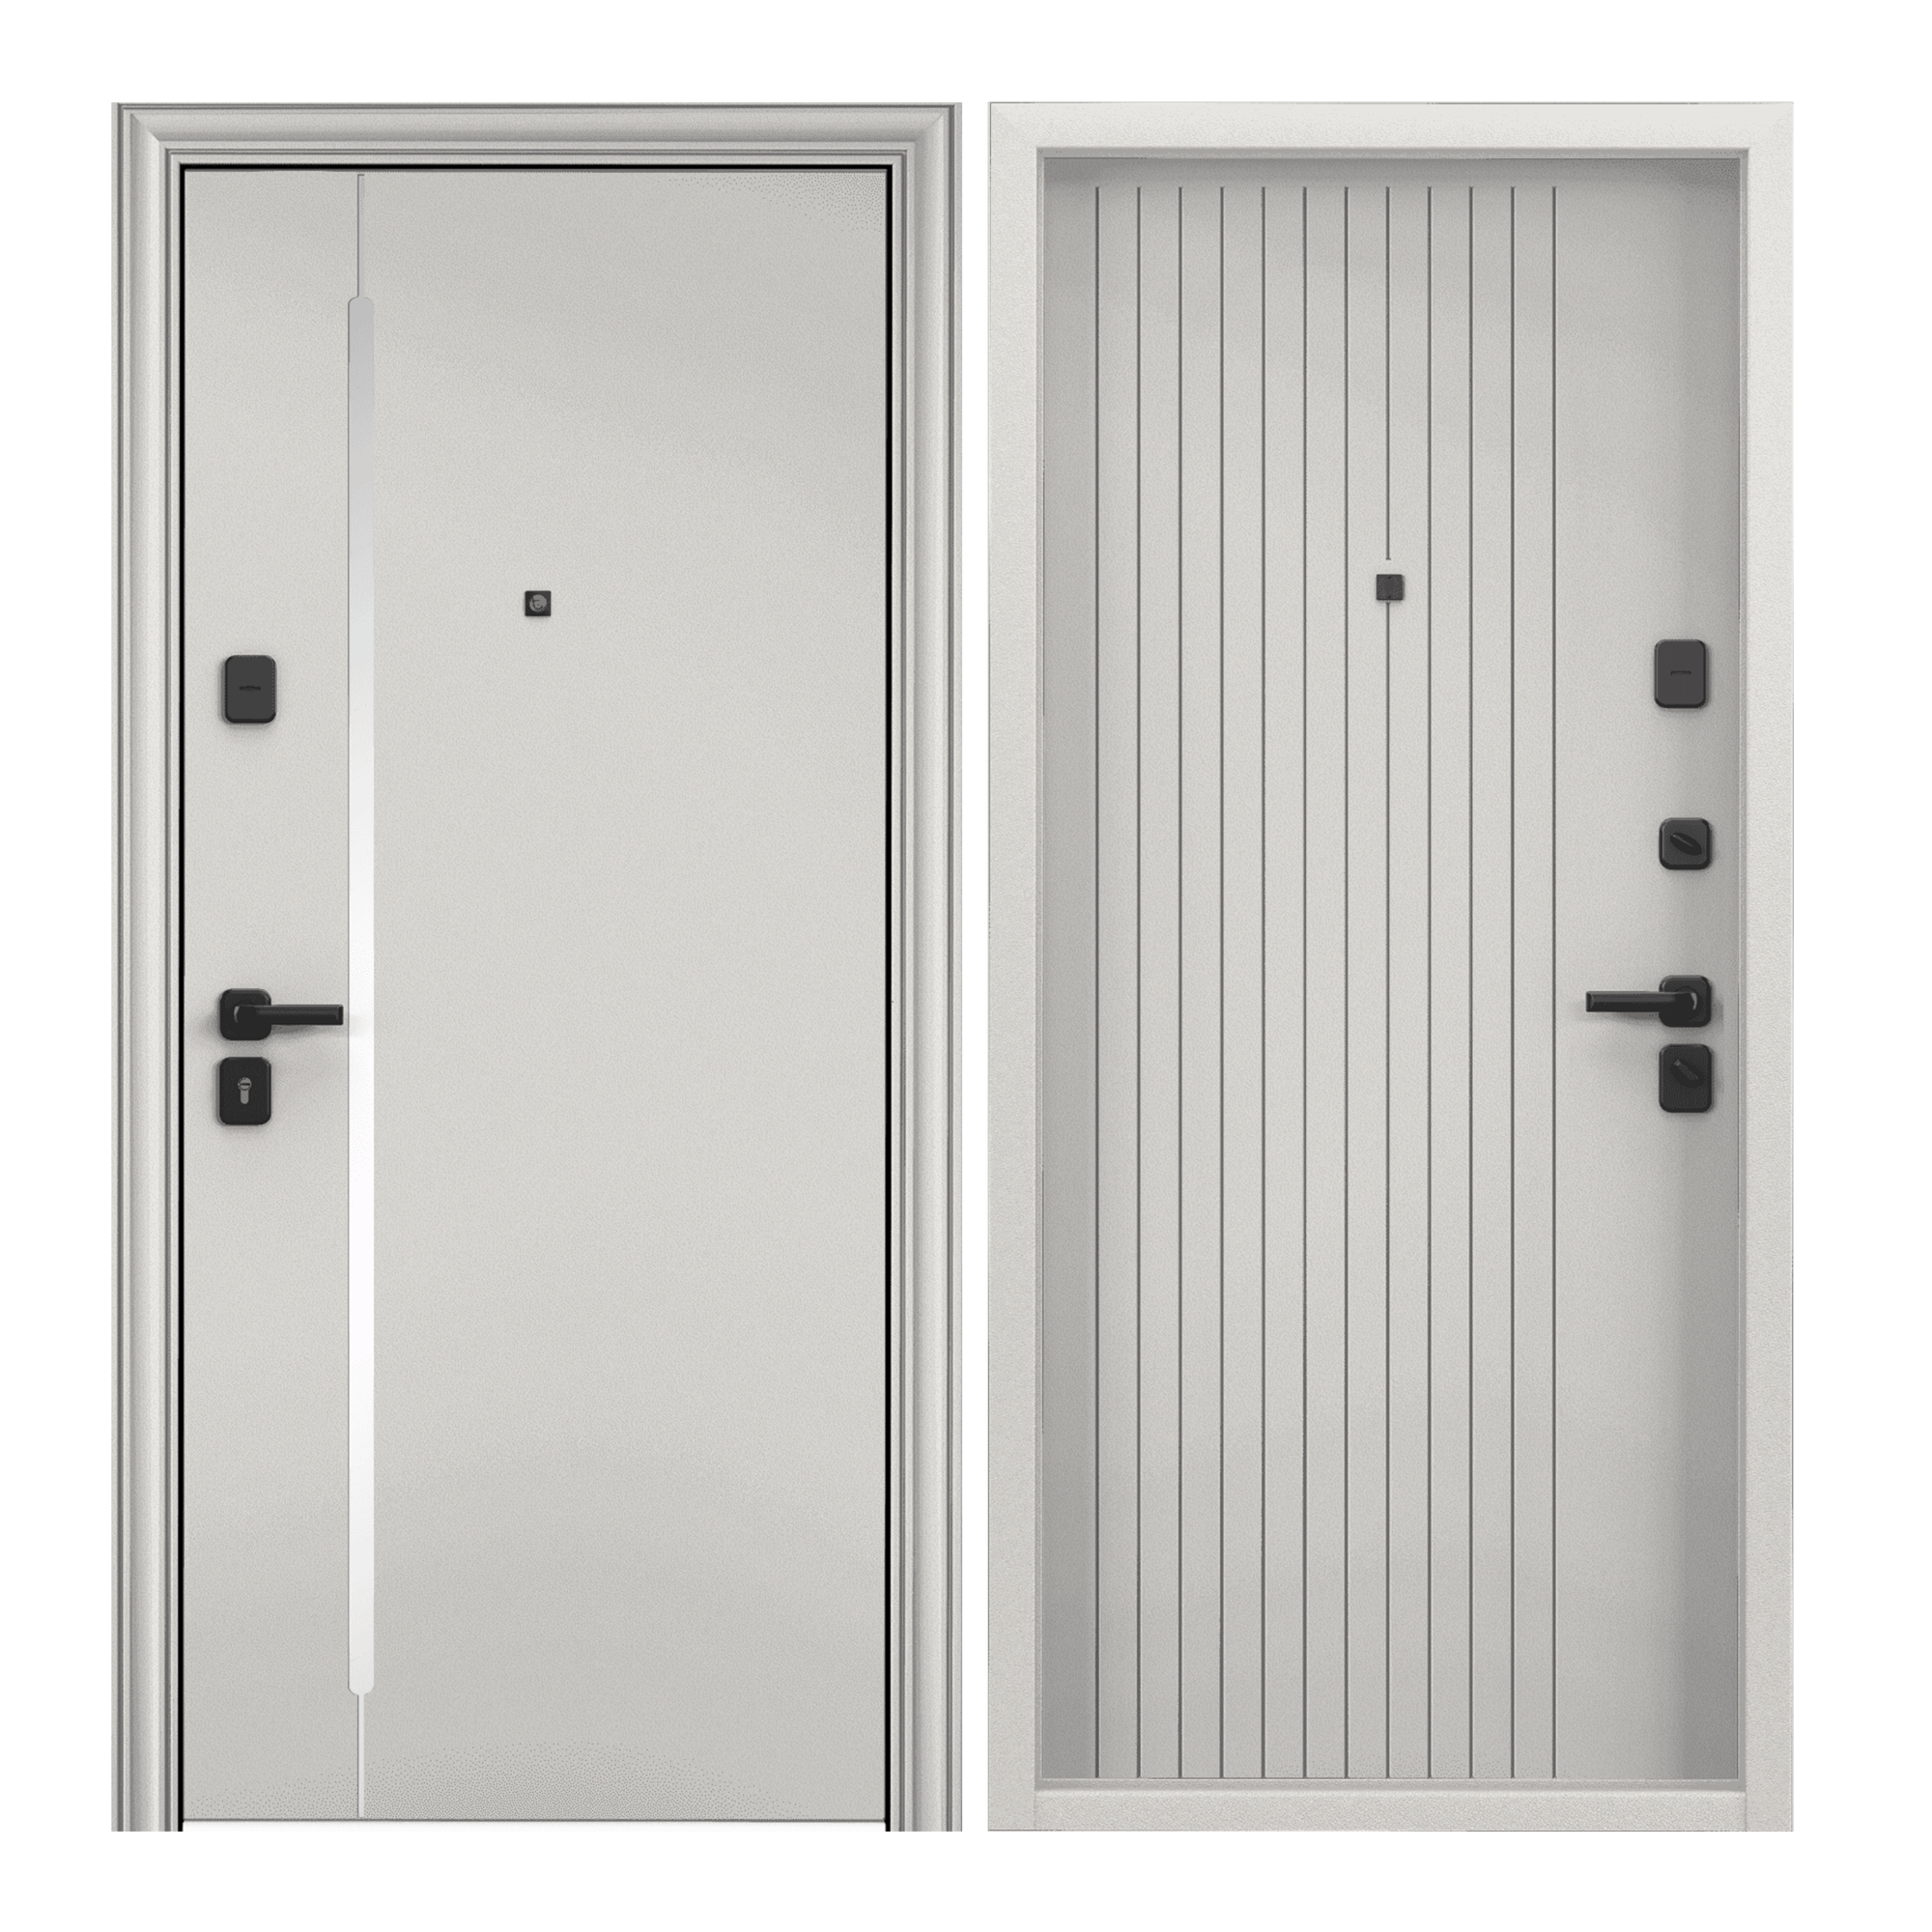 Дверь входная для квартиры Torex Comfort X 950х2070 правый тепло-шумоизоляция, антикоррозийная защита, замки 4-ого класса защиты, светло-серый